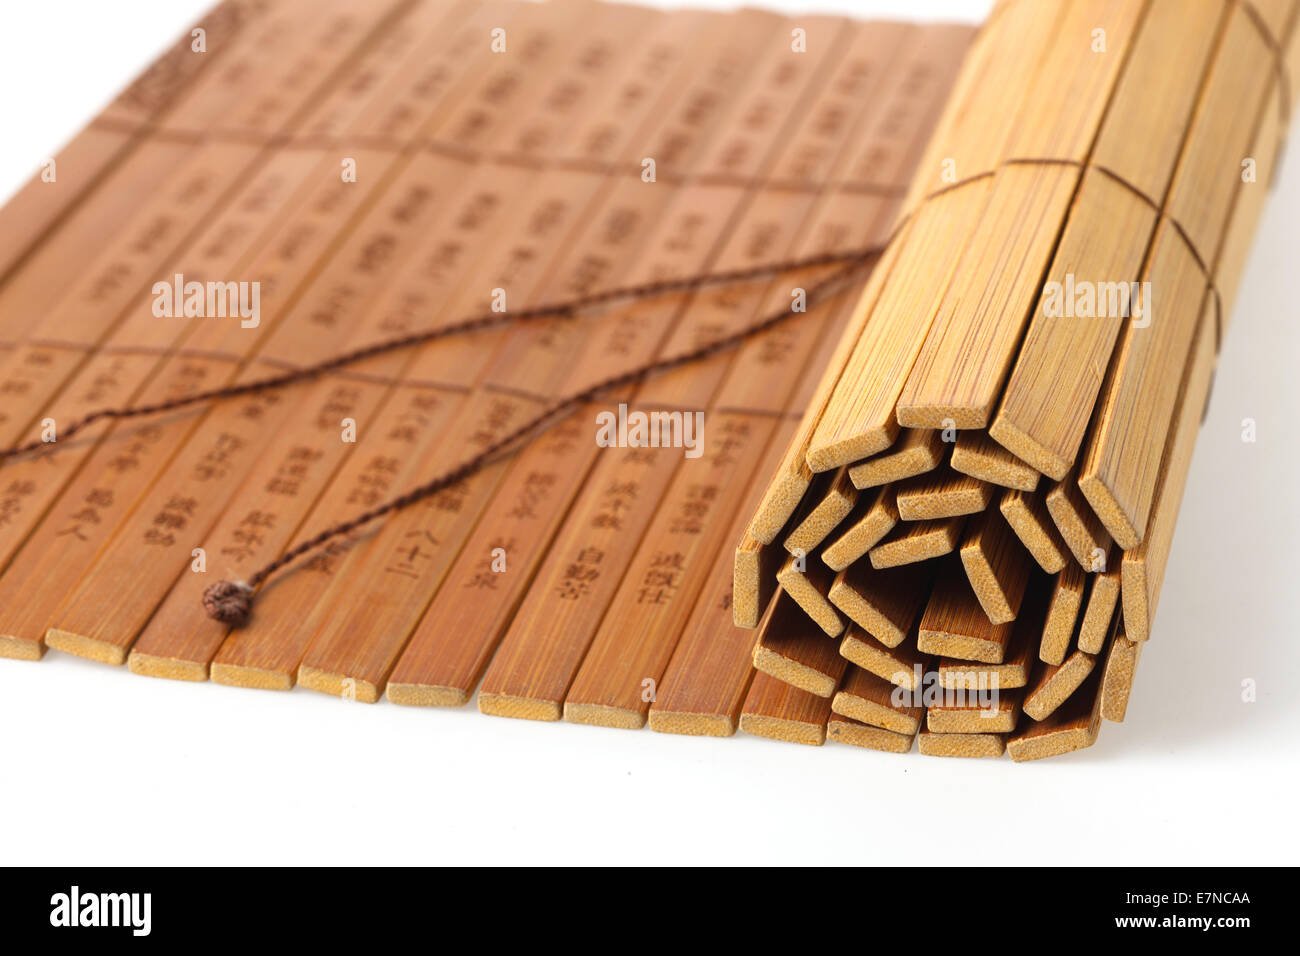 Bamboo slips Stock Photo